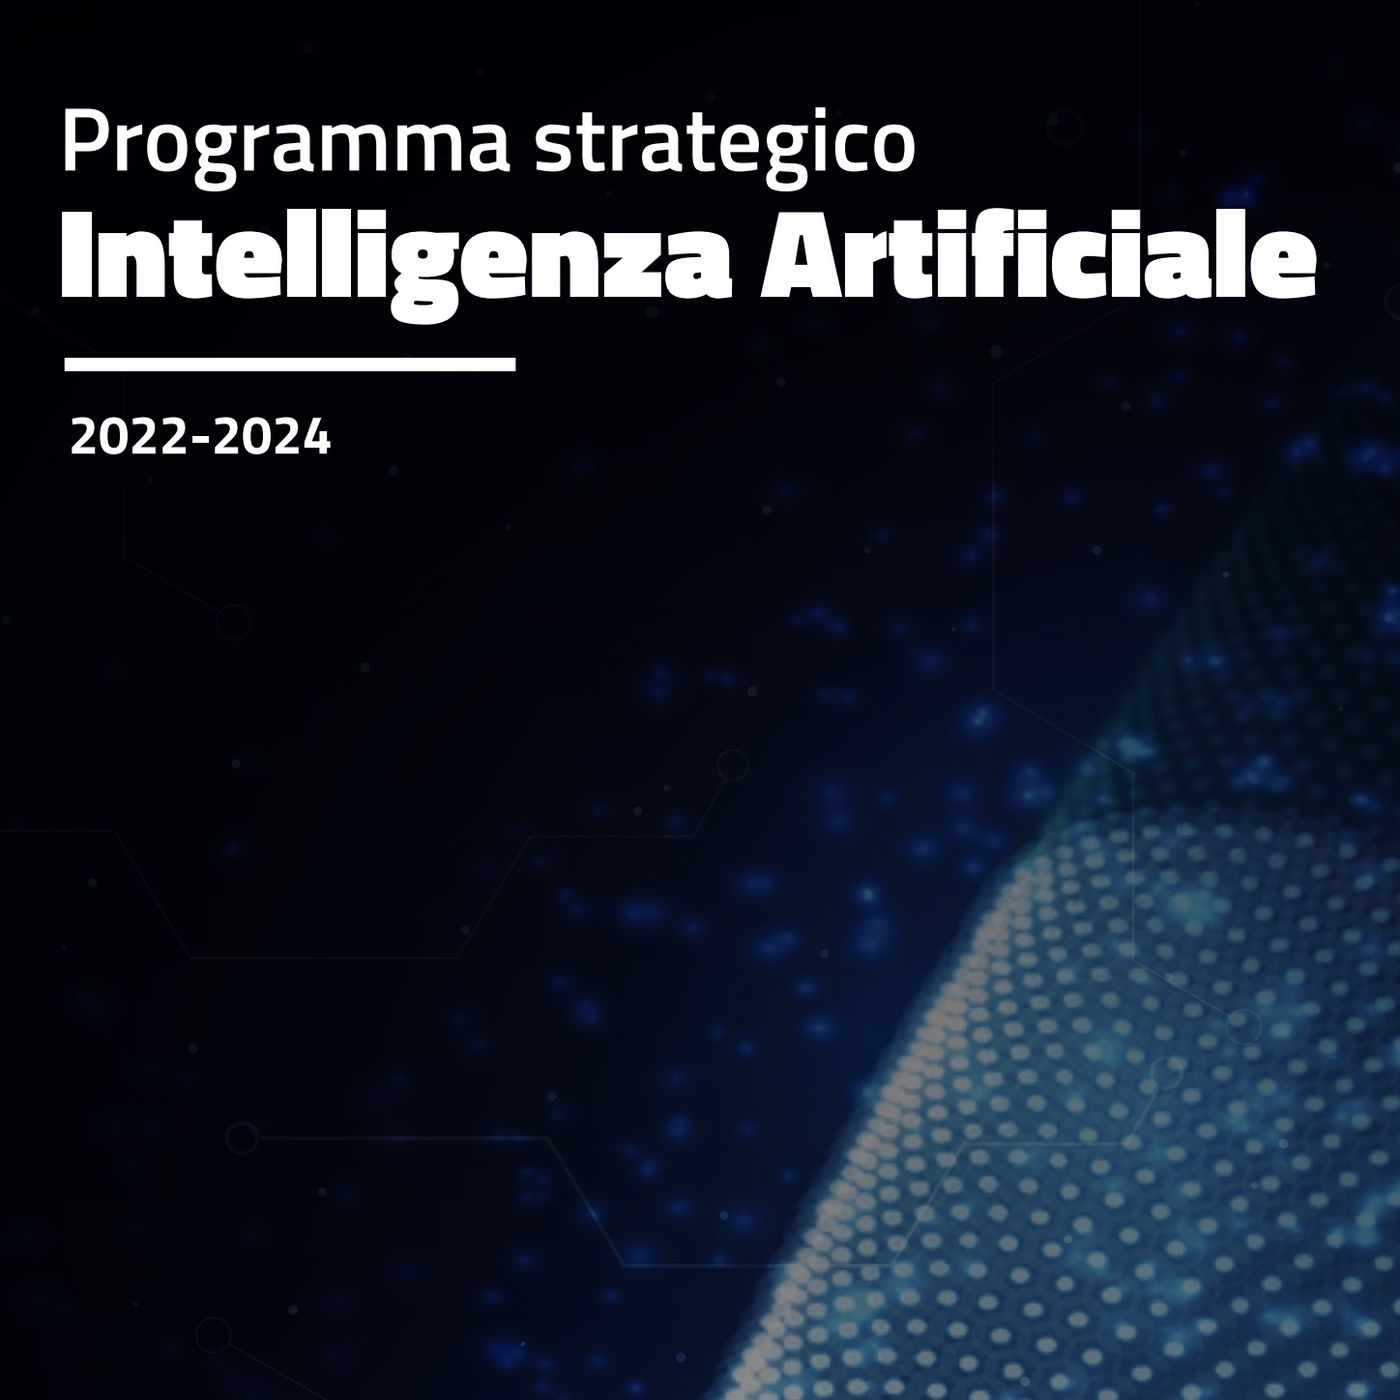 La strategia italiana sull'Intelligenza Artificiale